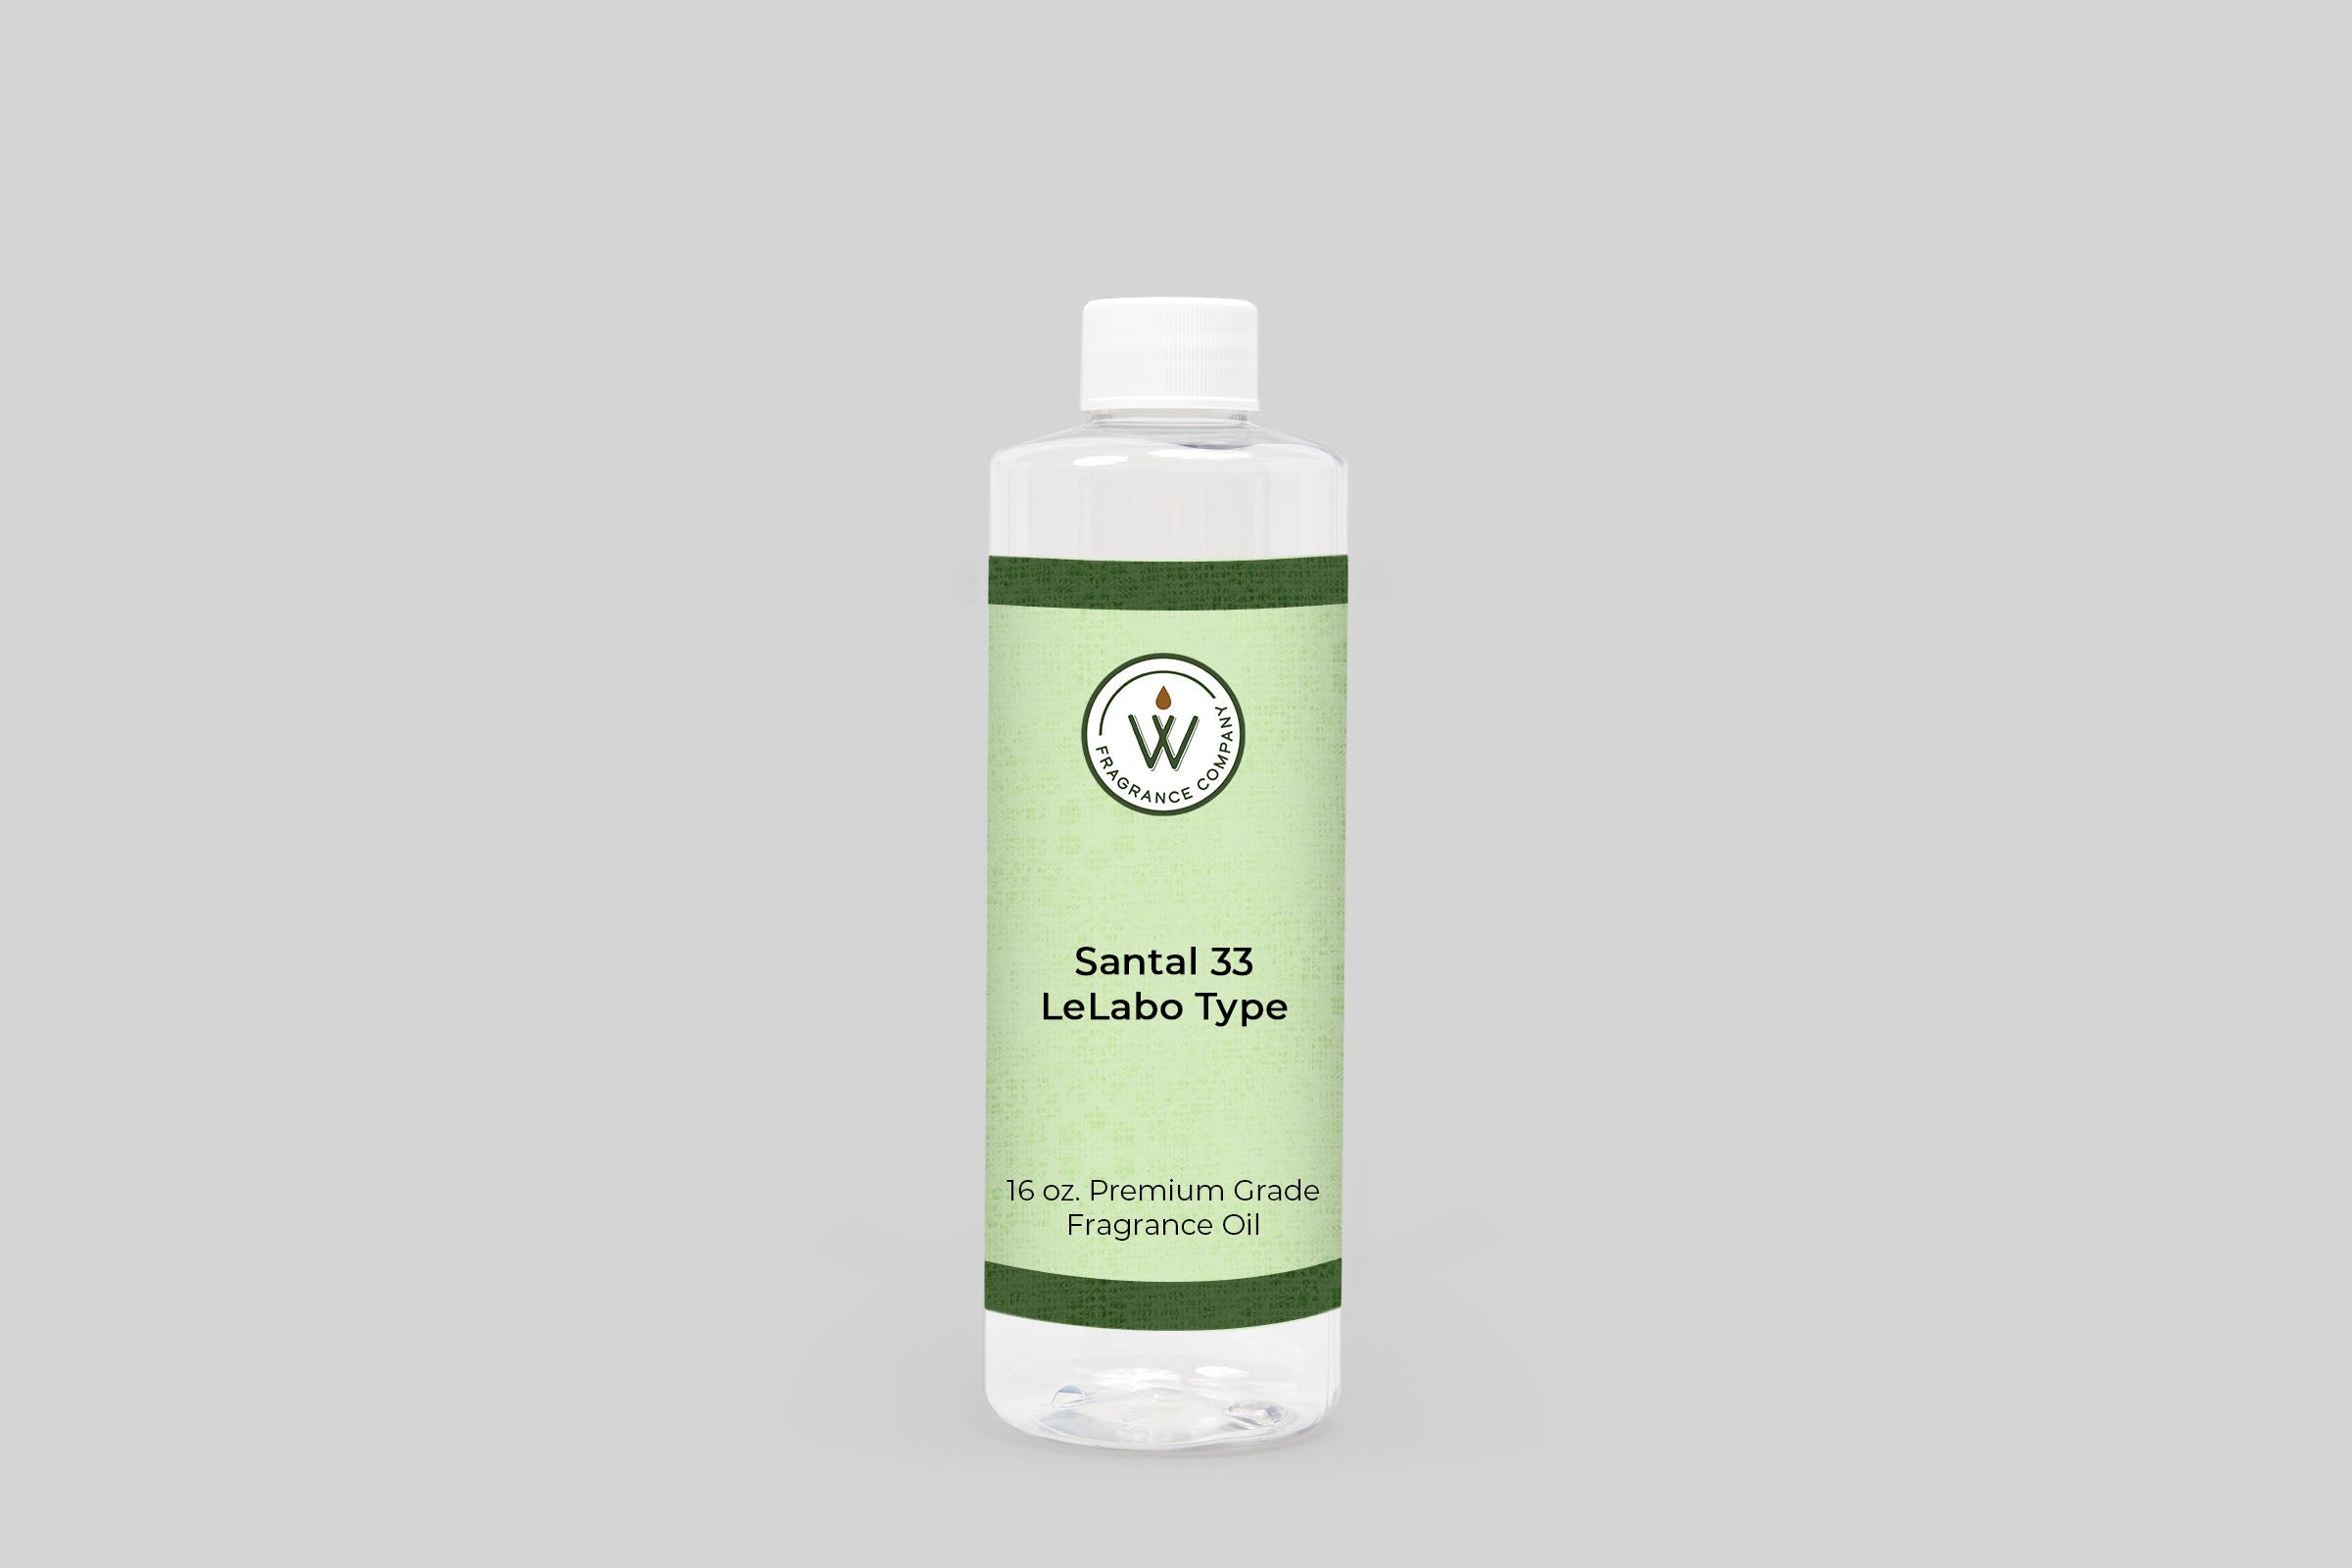 Santal 33 LeLabo Type Fragrance Oil